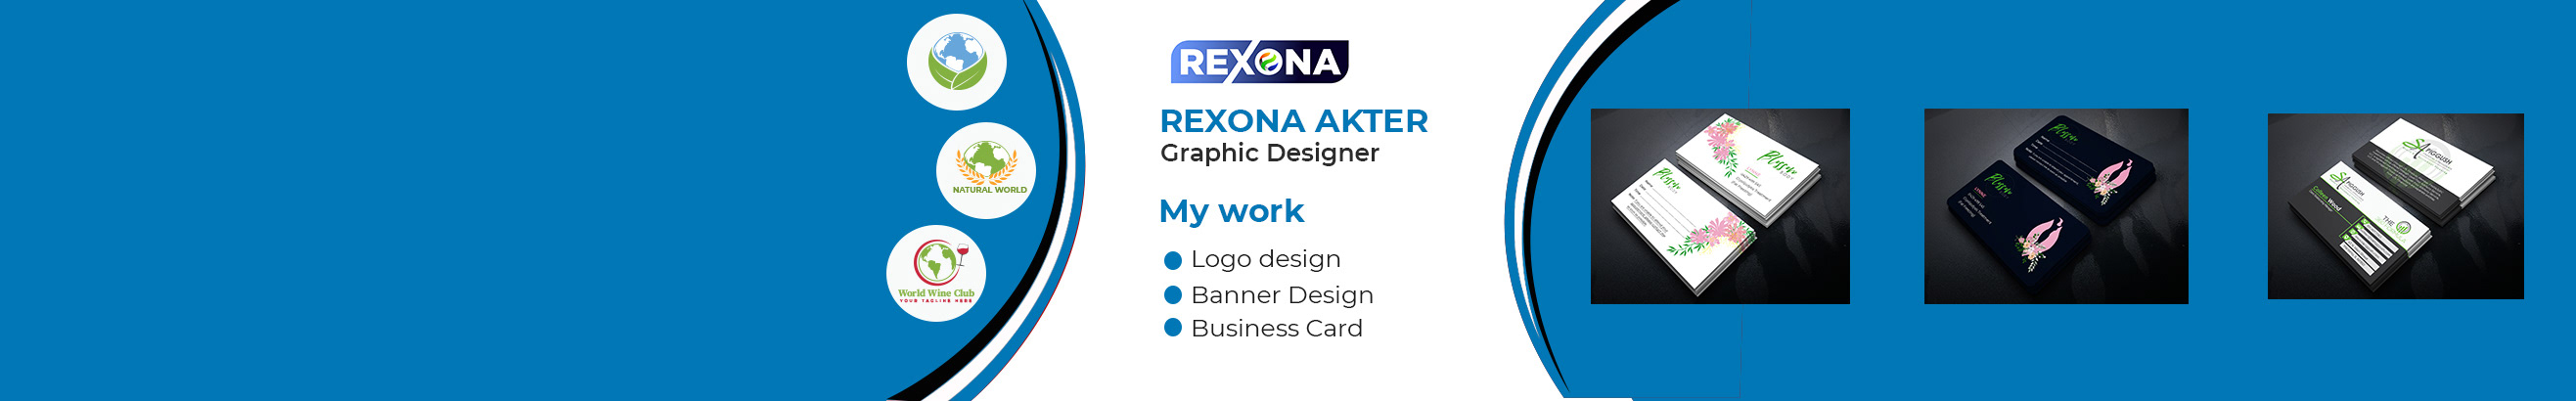 Banner de perfil de Rexona Akter